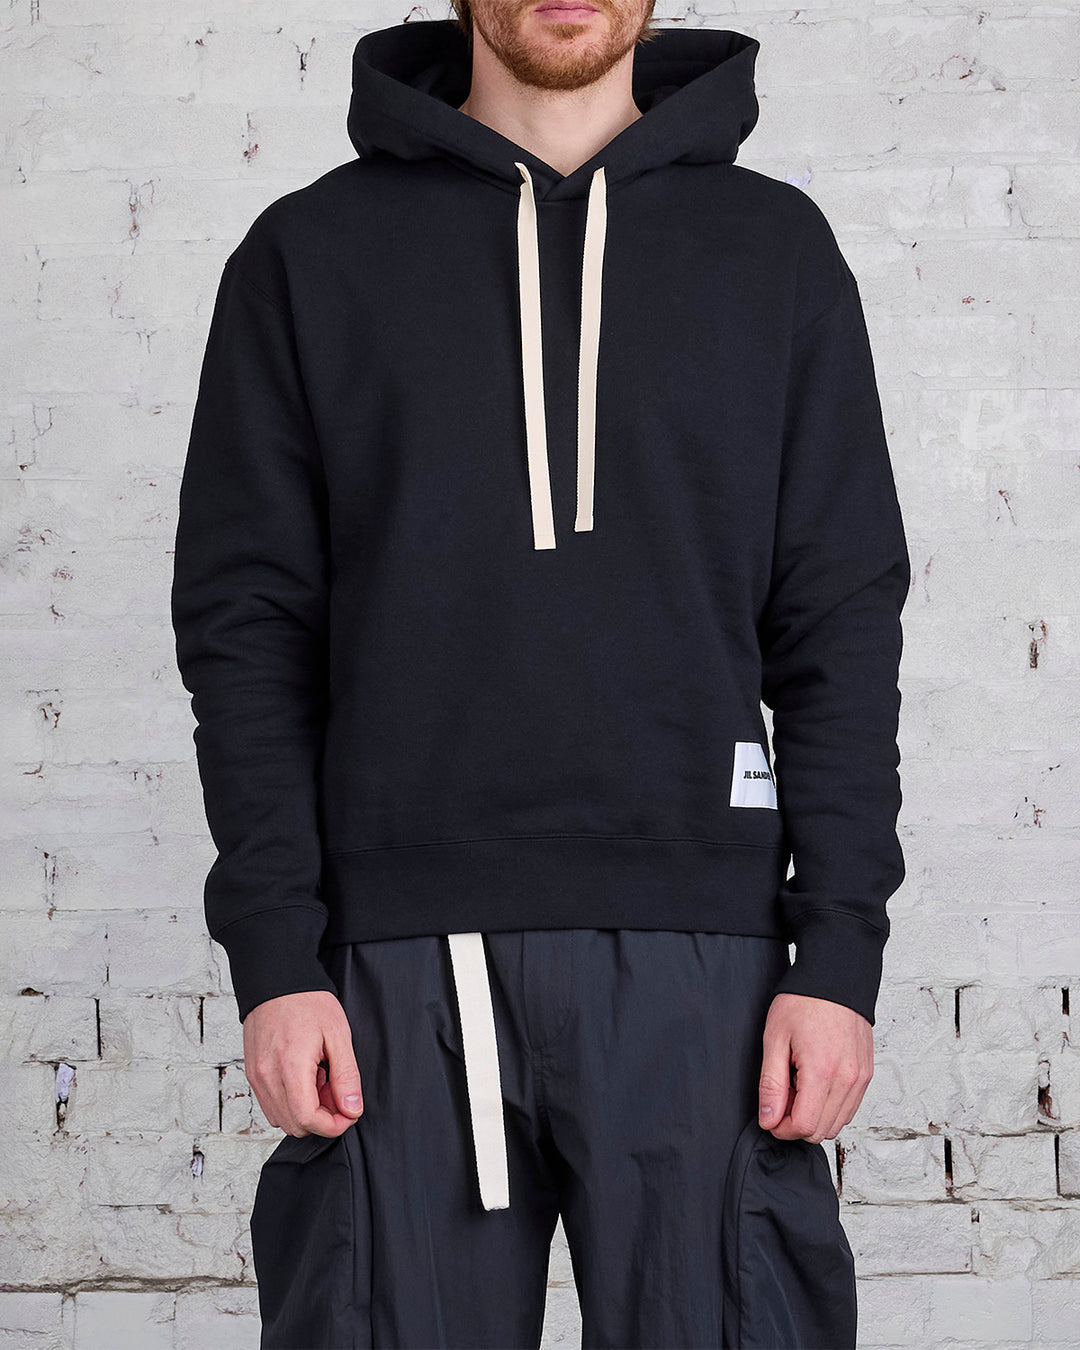 Jil Sander+ Label Hooded Sweatshirt Black